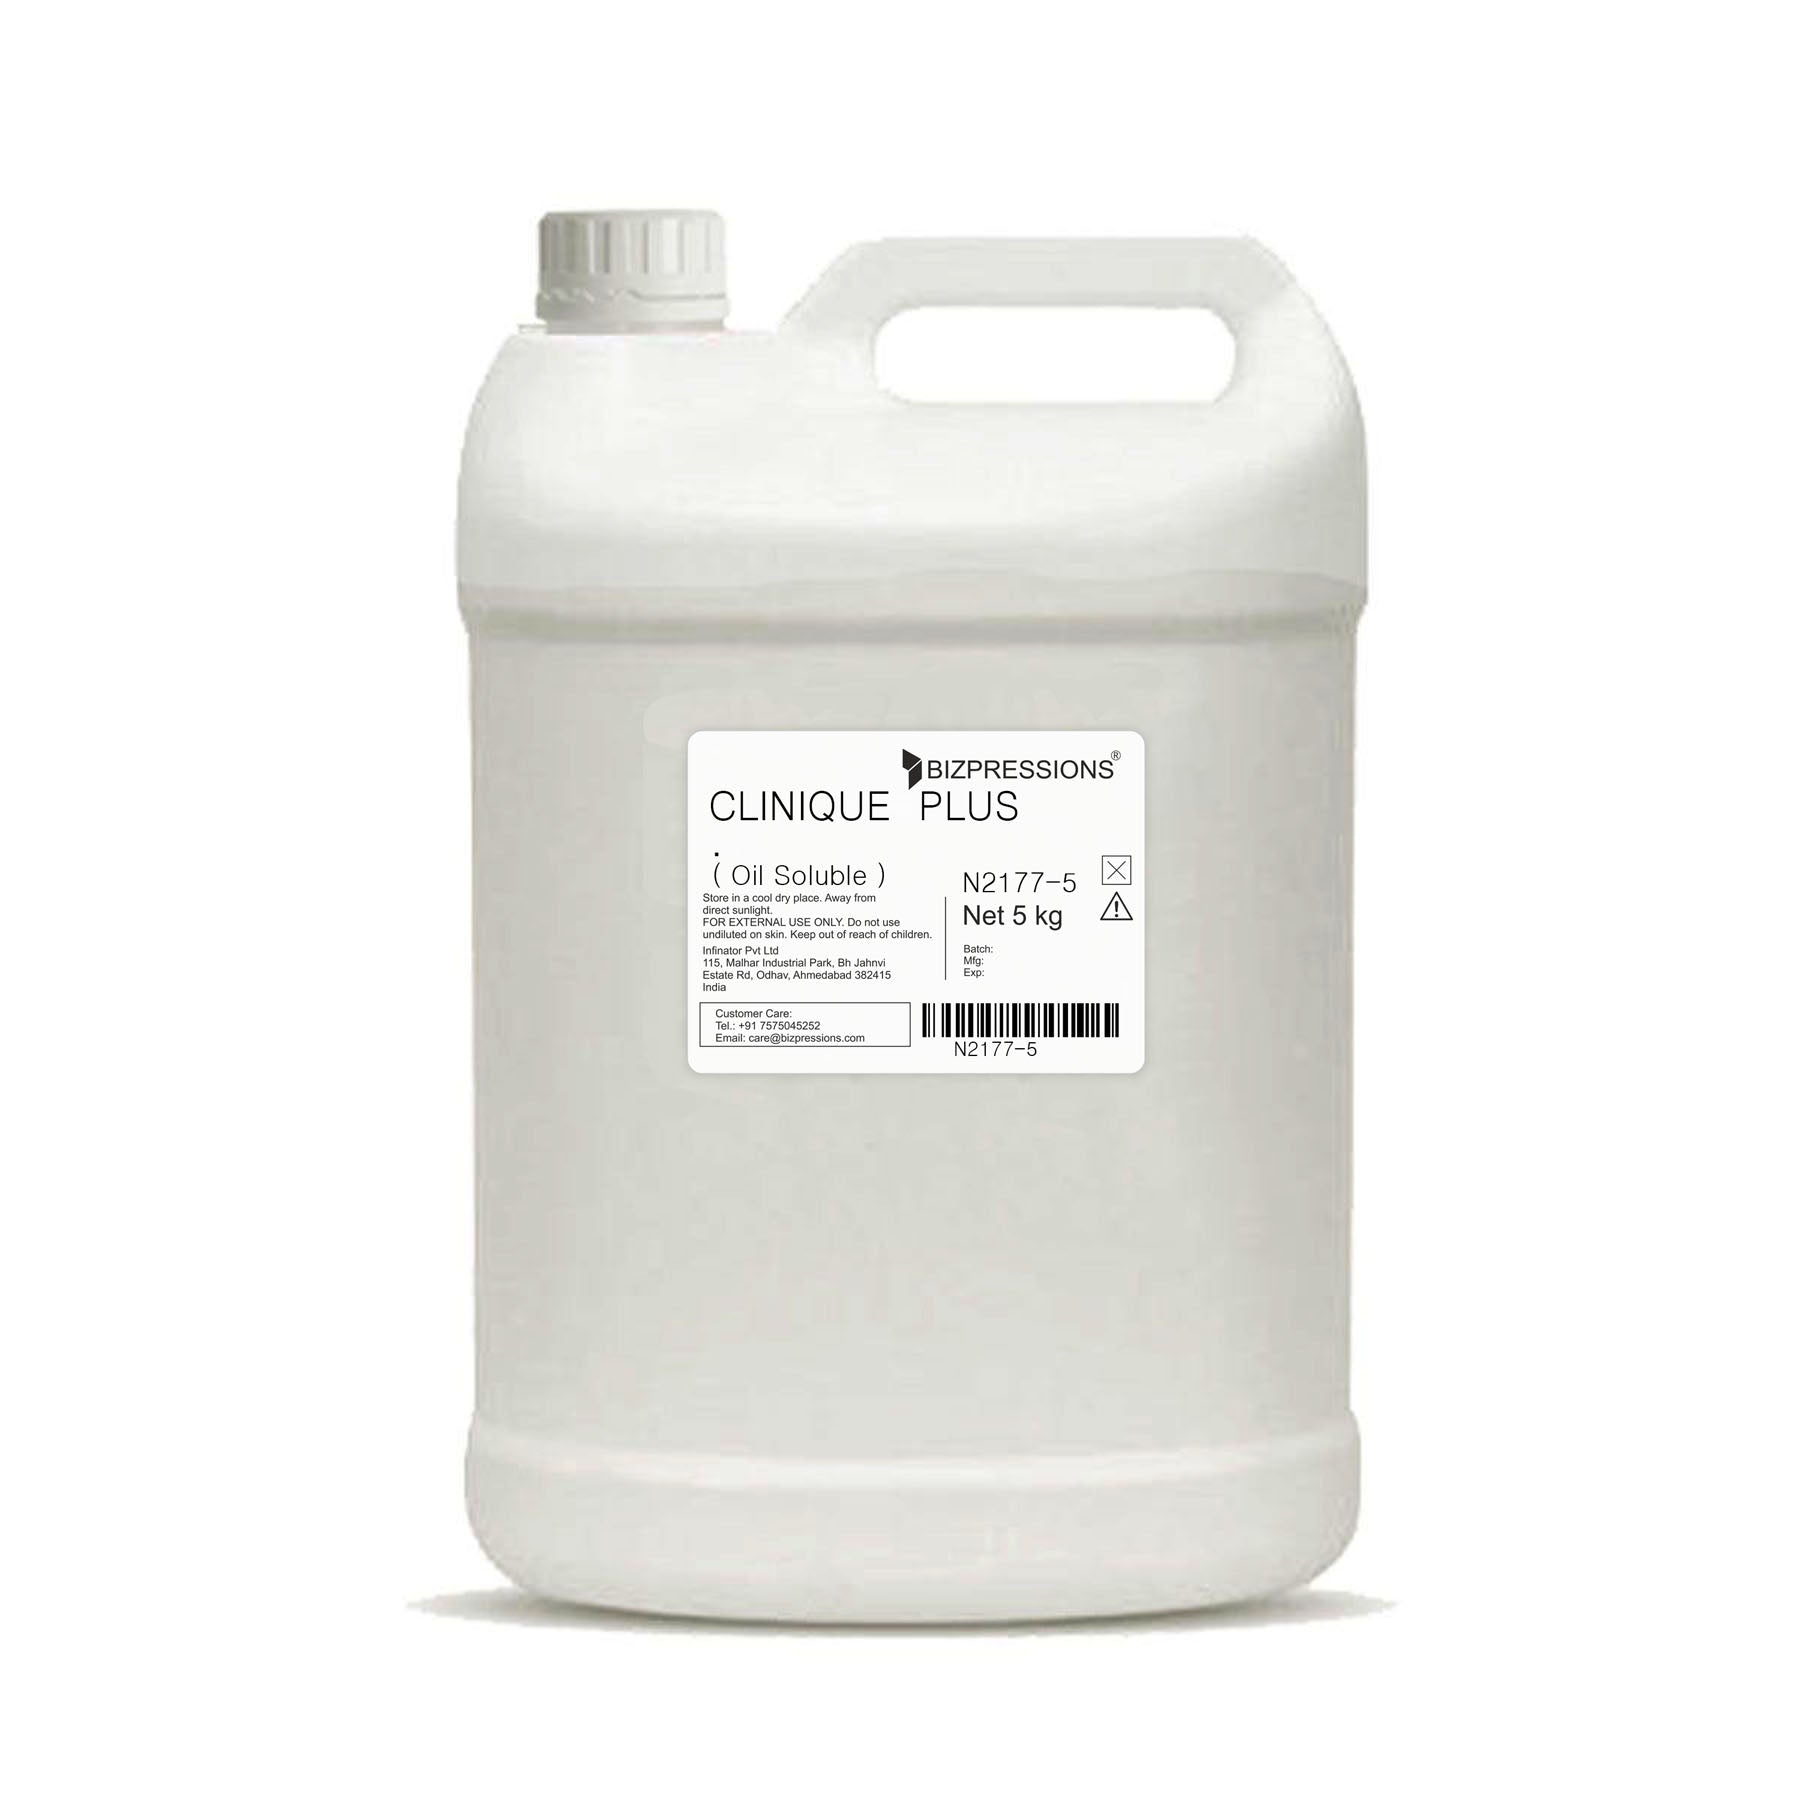 CLINIQUE PLUS - Fragrance ( Oil Soluble ) - 5 kg